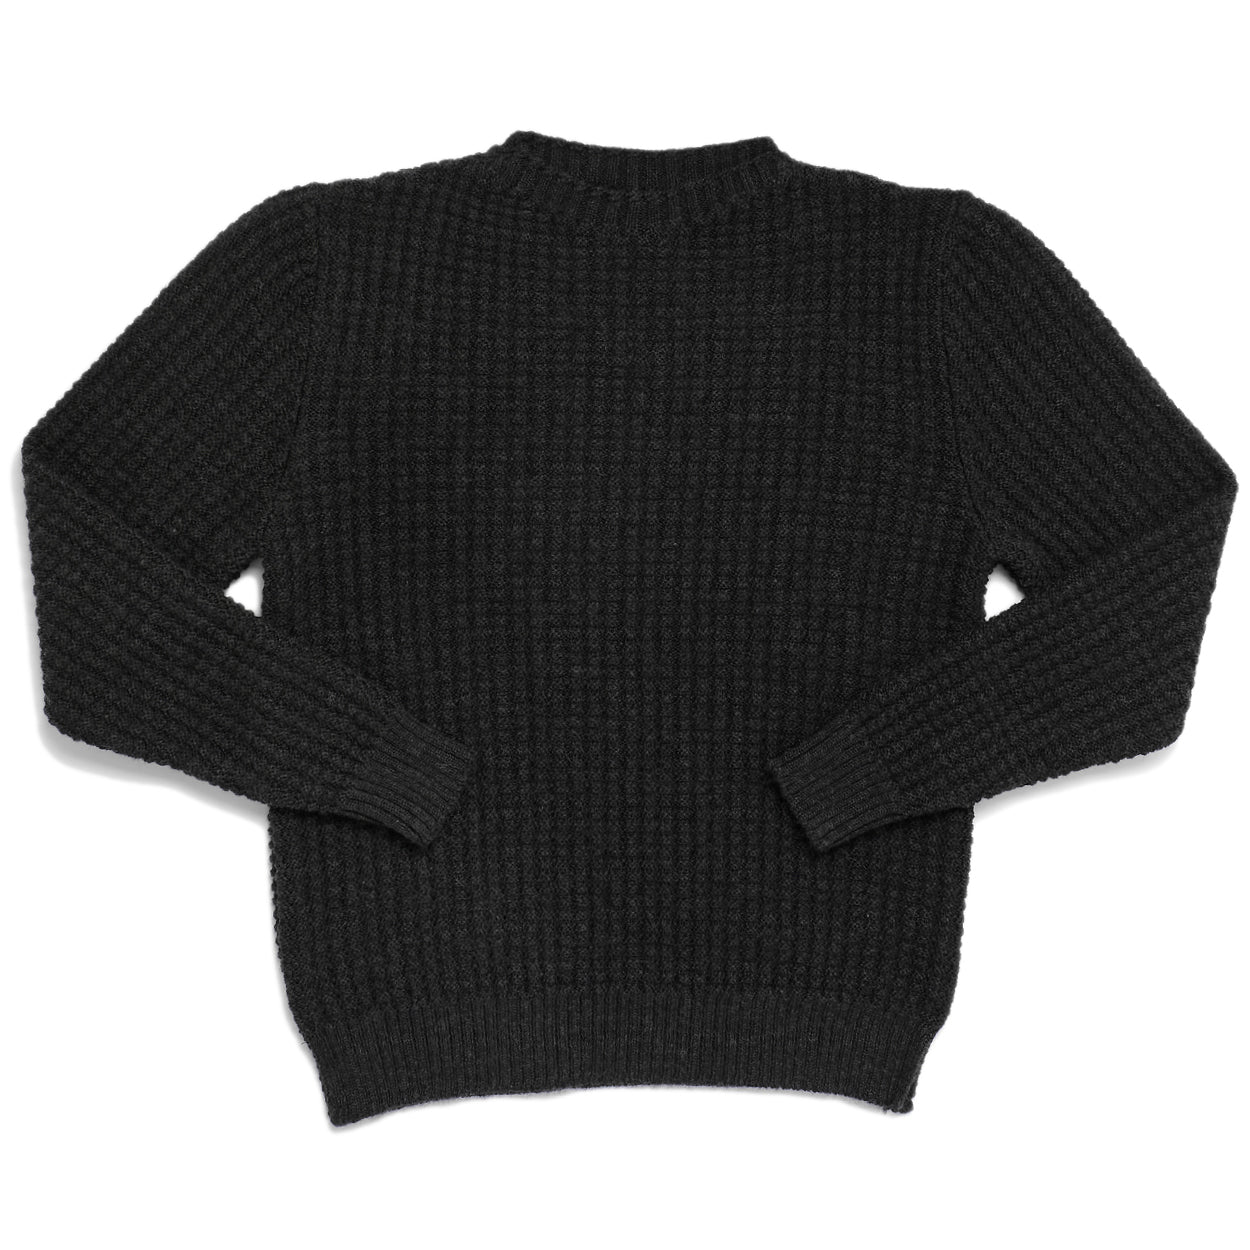 Charcoal Waffle Knit Sweater